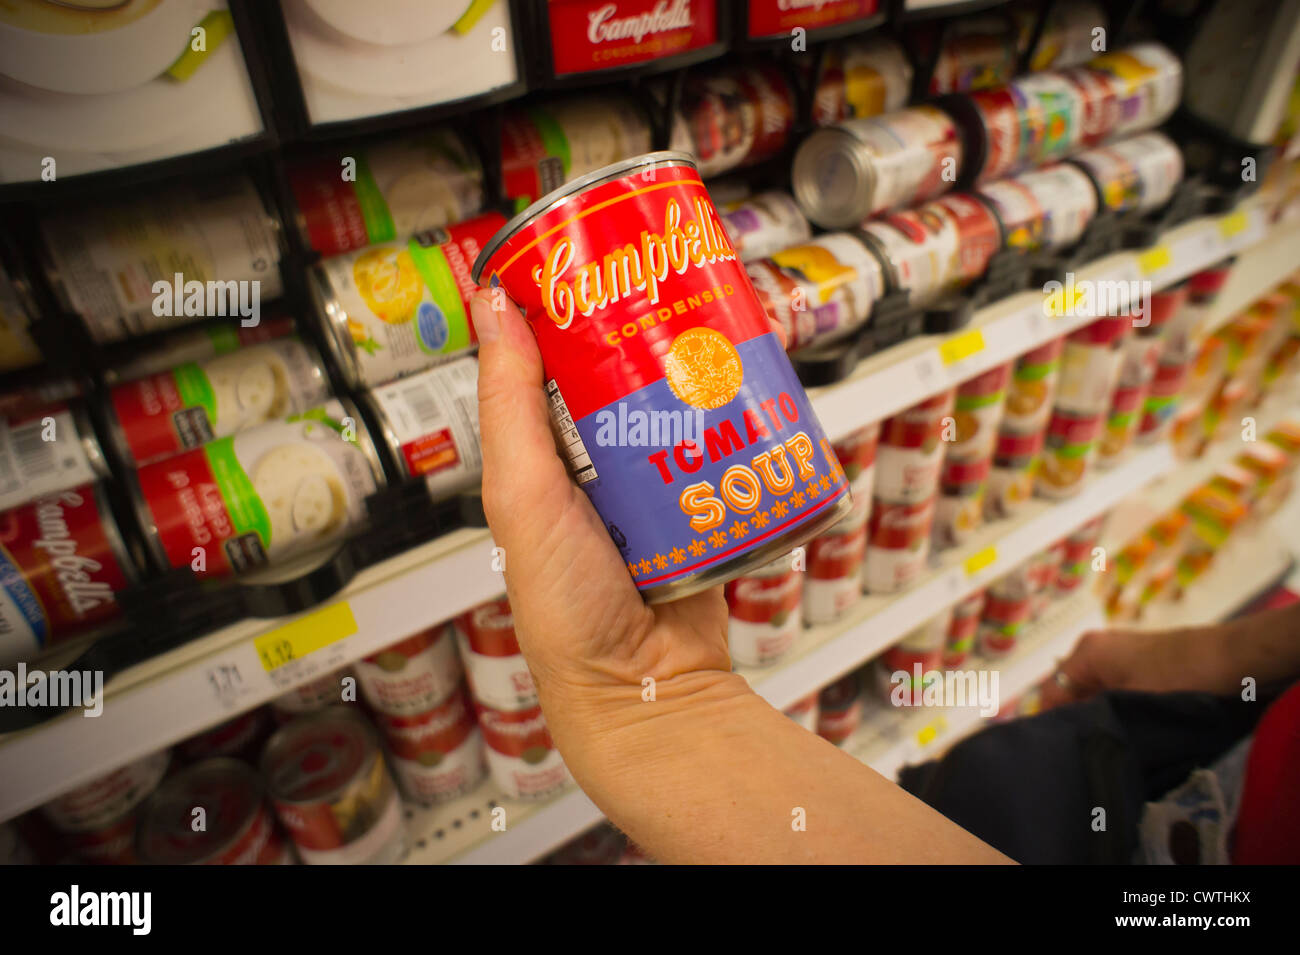 Andy Warhol Limited Edition kann der Campbells Tomatensuppe ist in ein Ziel Kaufhaus Lebensmittelgeschäft in New York gesehen. Stockfoto